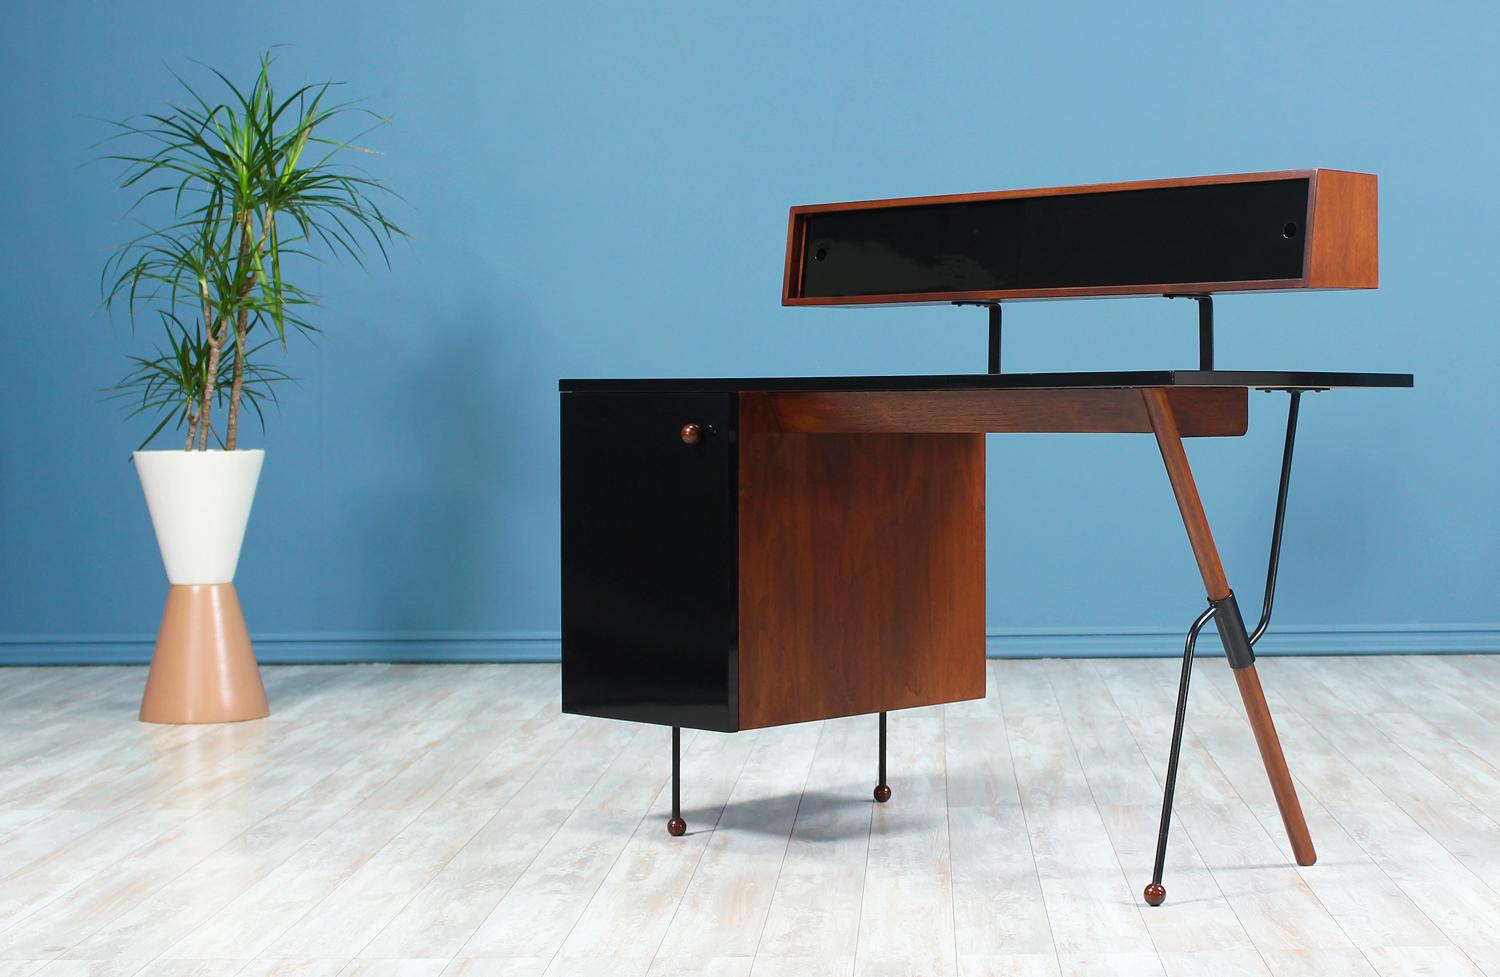 Ein fantastischer Schreibtisch:: entworfen von Greta M. Grossman für Glenn of California in den Vereinigten Staaten im Jahr 1952. Dieser schöne Schreibtisch besteht aus Walnussholz mit einer glänzenden schwarzen Laminatbeschichtung:: die einen